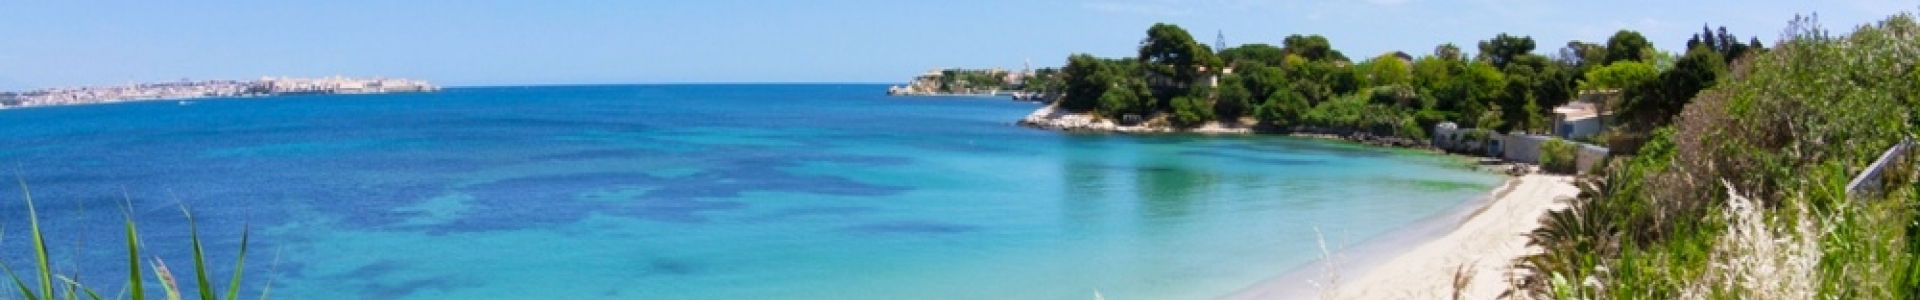 Héliades : séjours tout compris, Crète, Sicile... jusqu'à - 41%